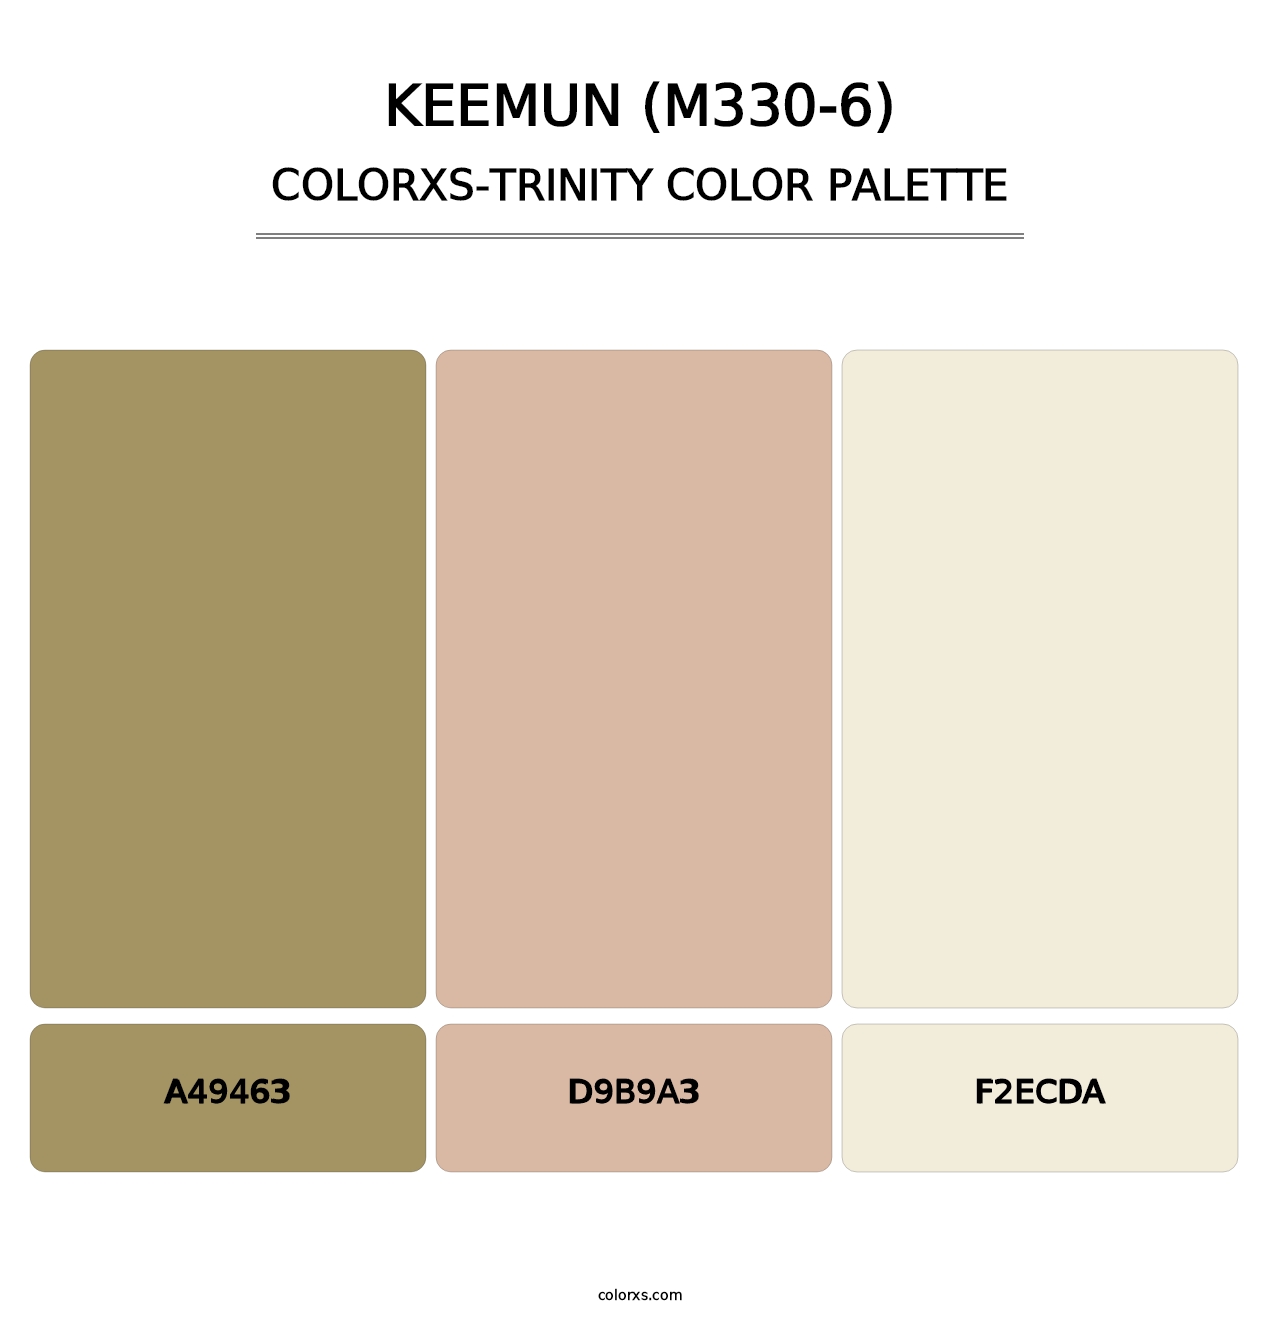 Keemun (M330-6) - Colorxs Trinity Palette